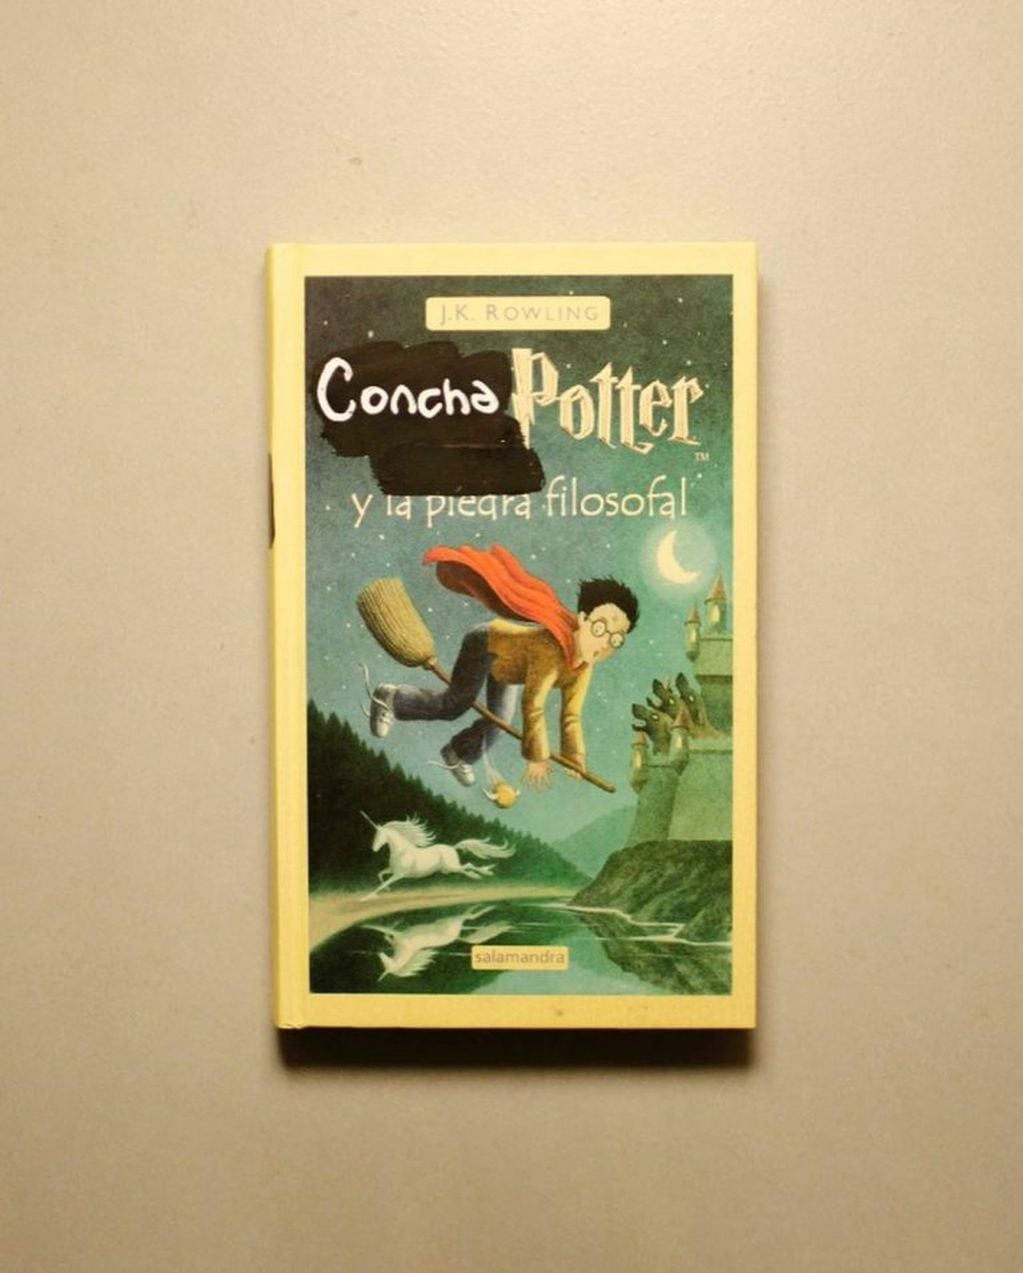 Santiago Maratea lanzó una colección de libros llamada "Concha Potter" y los haters lo criticaron